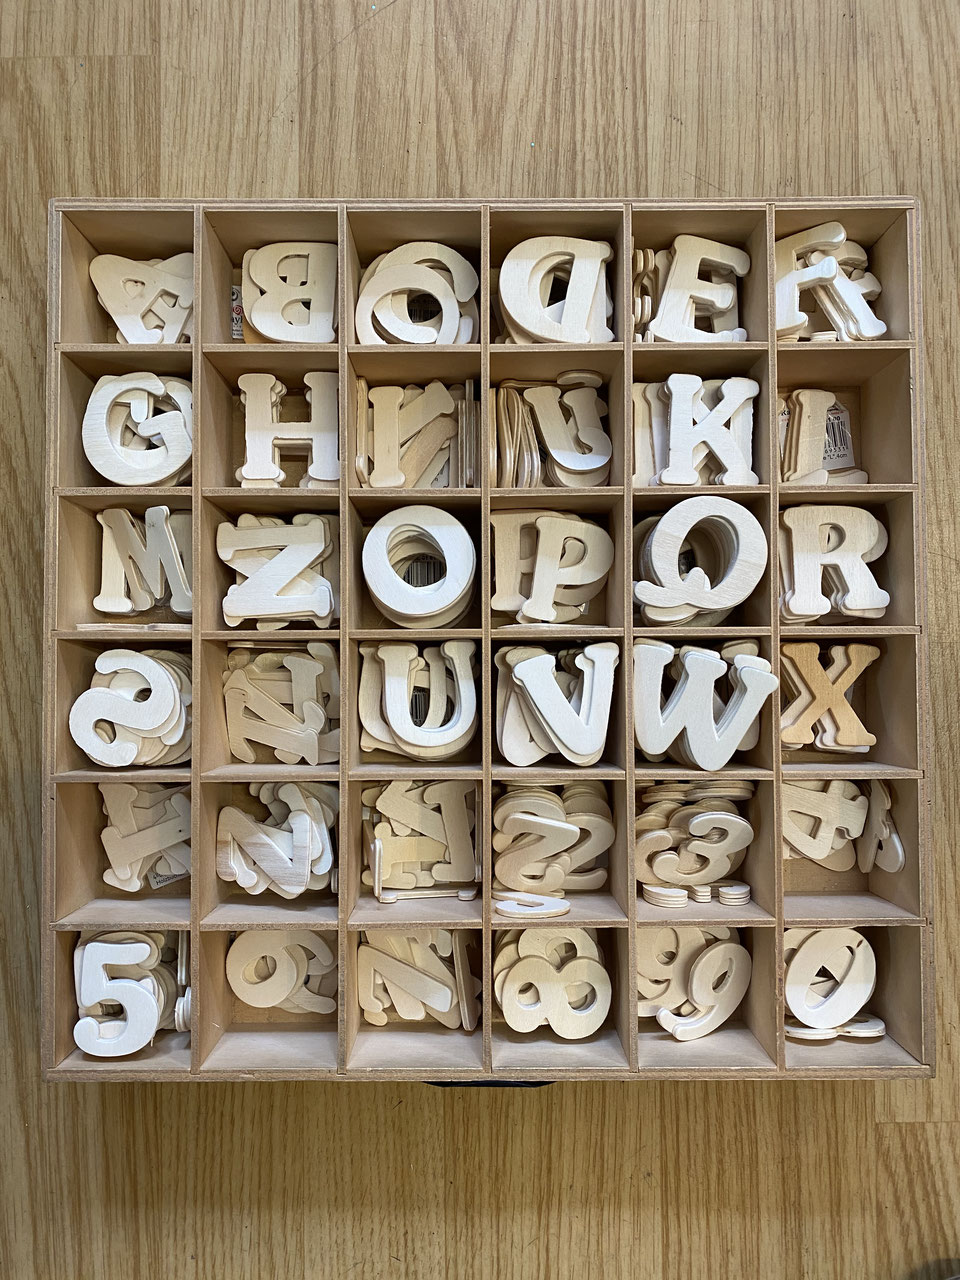 Kaufen Sie Kleine Holzbuchstaben Alphabet 54 Buchstaben Dekoration und  Basteln zu Großhandelspreisen